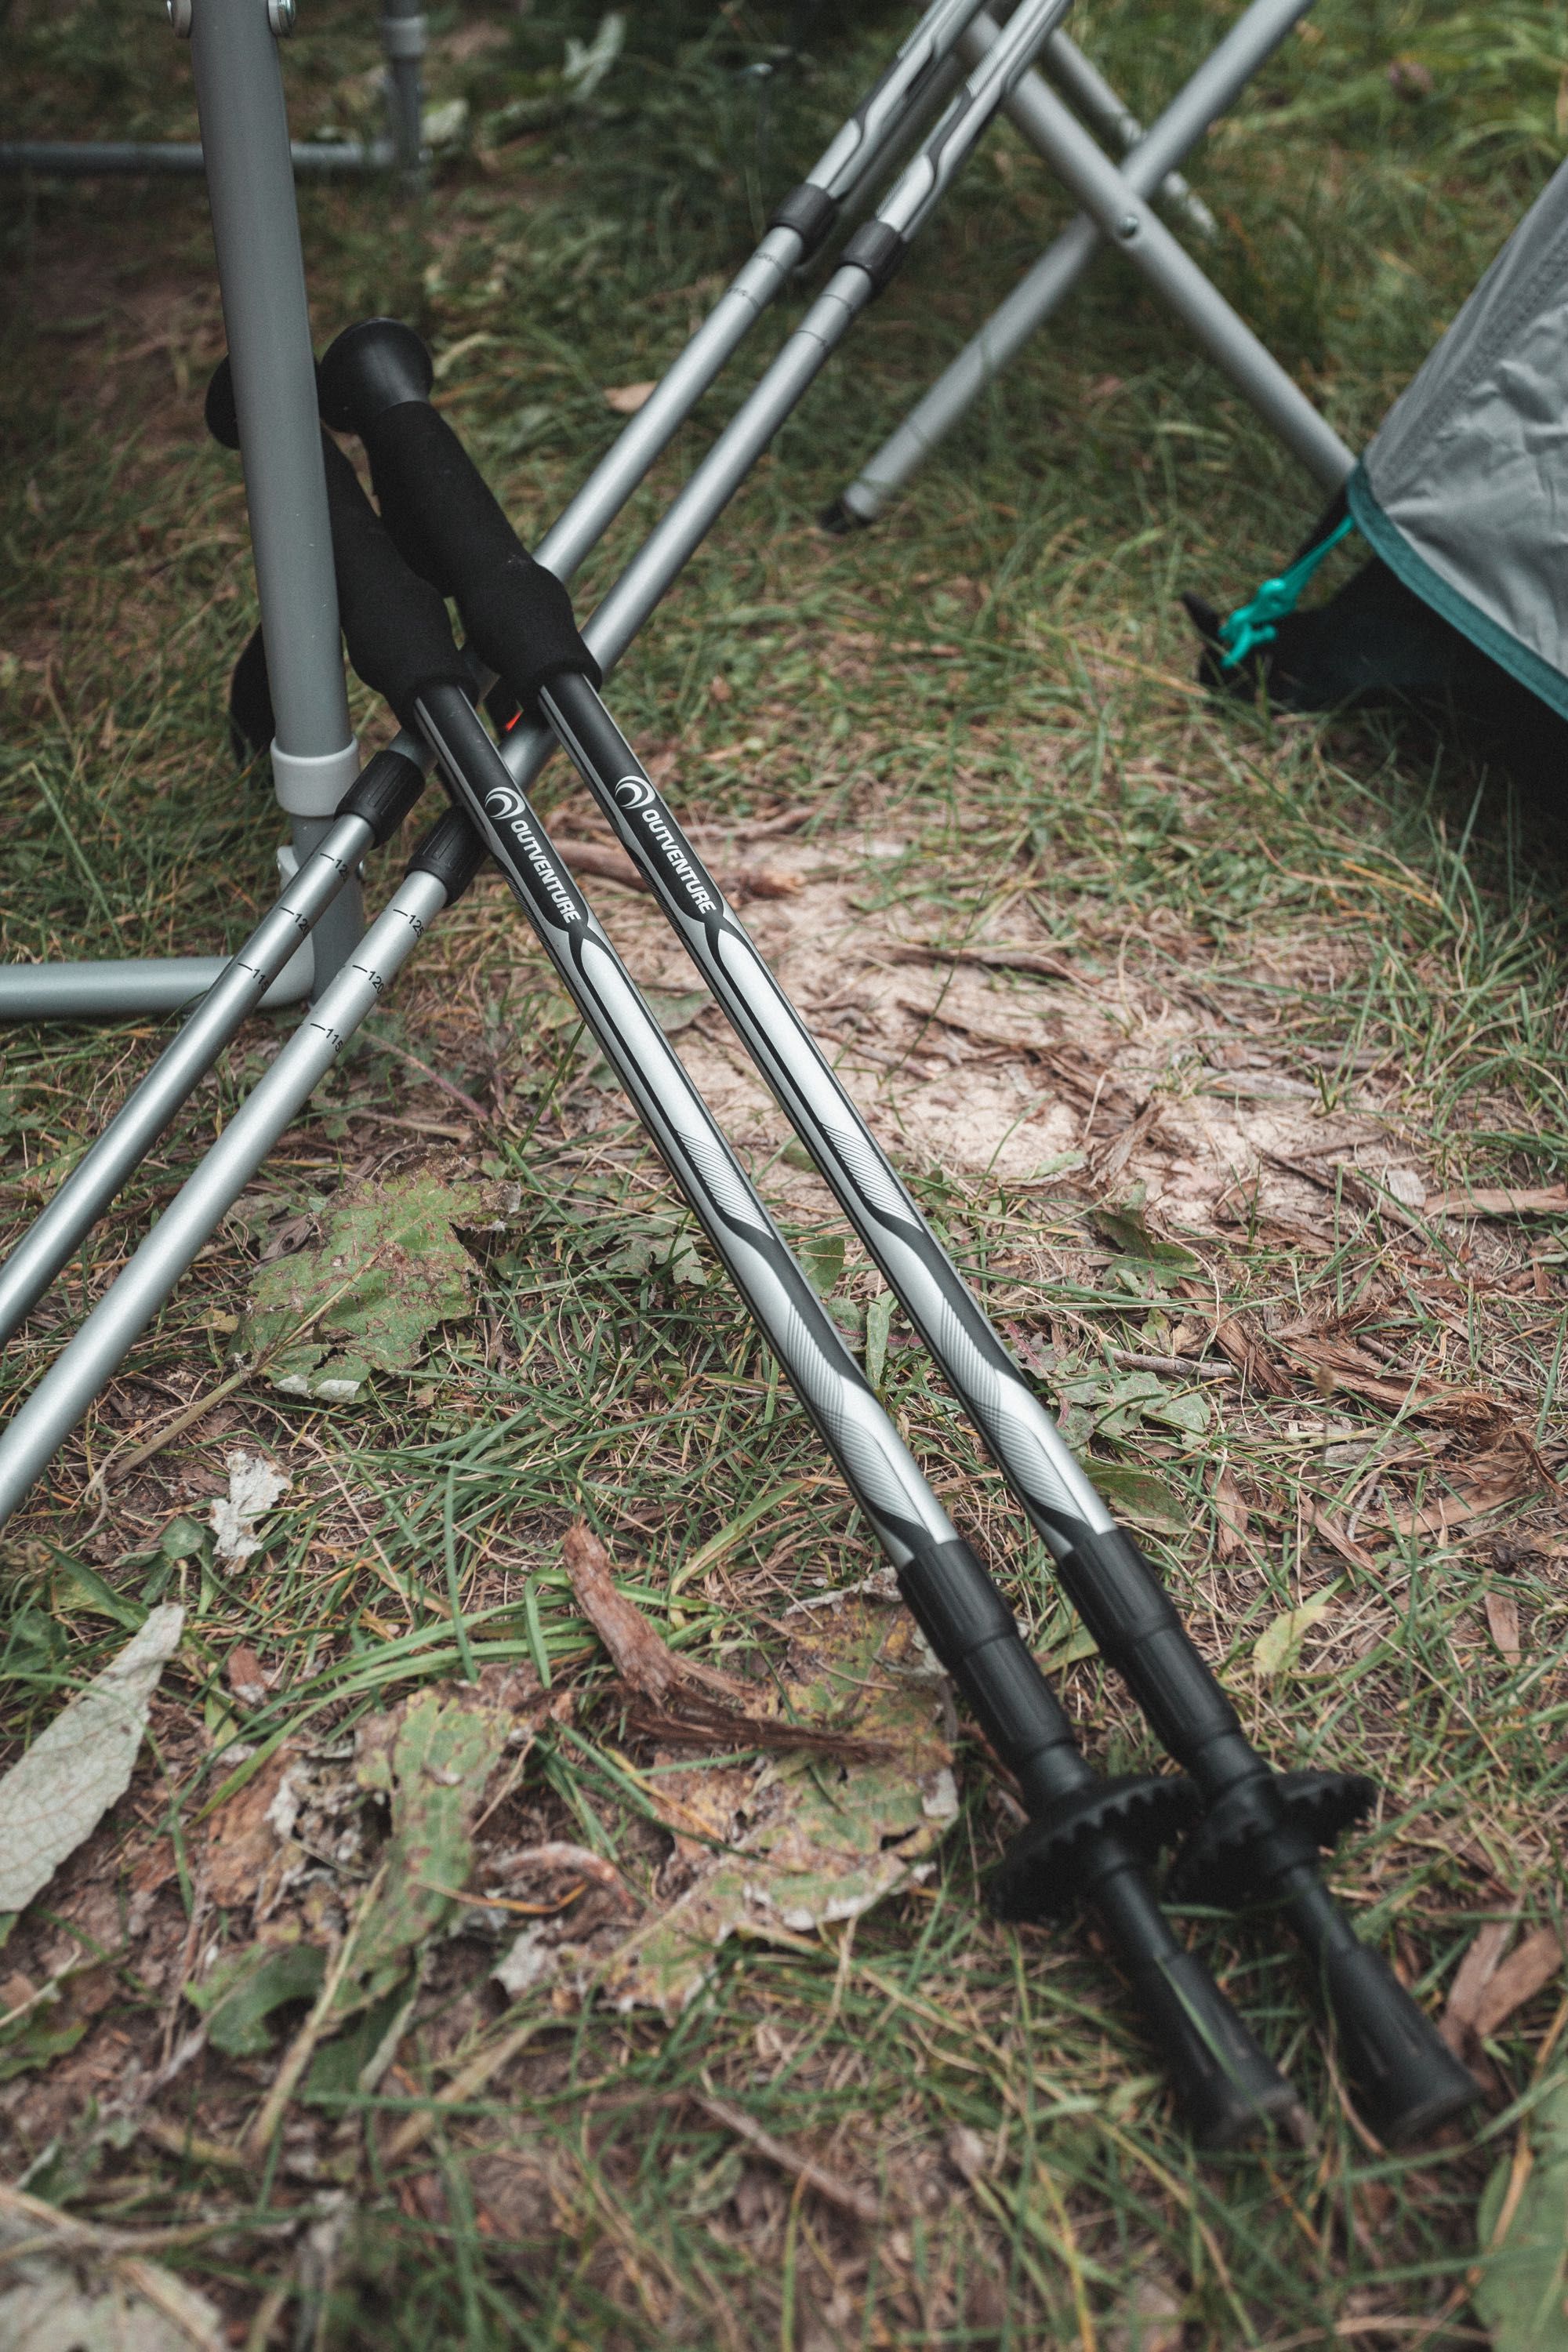 Аренда походного снаряжения | Basecamping - палатки, спальные мешки